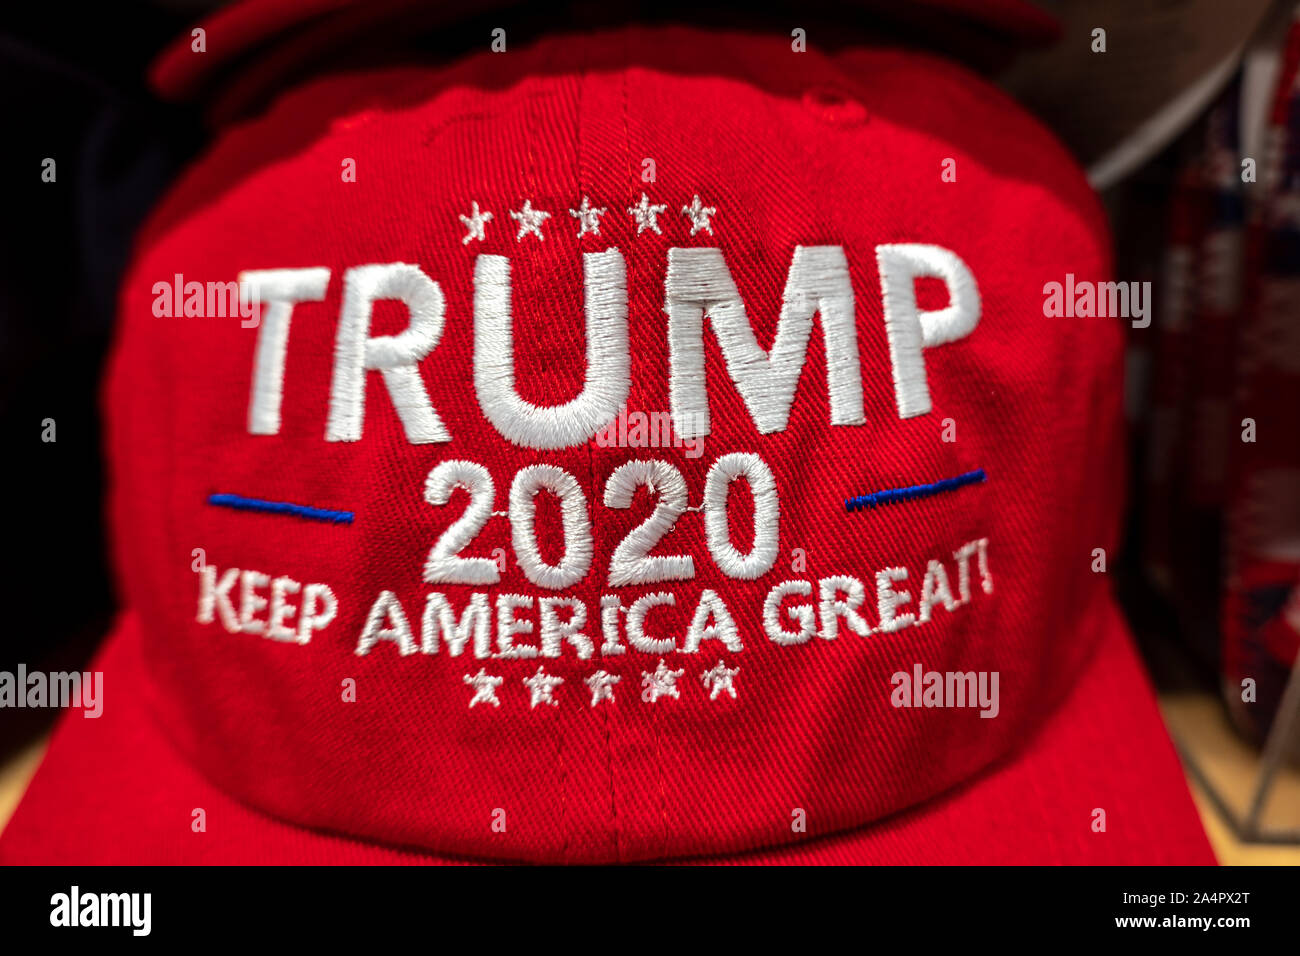 Nuevos sombreros, gorros de béisbol para el Trump 2020 campaña de re-elección Keep America genial. Campaña electoral recuerdos de mercancías para la venta en Washington DC. Foto de stock